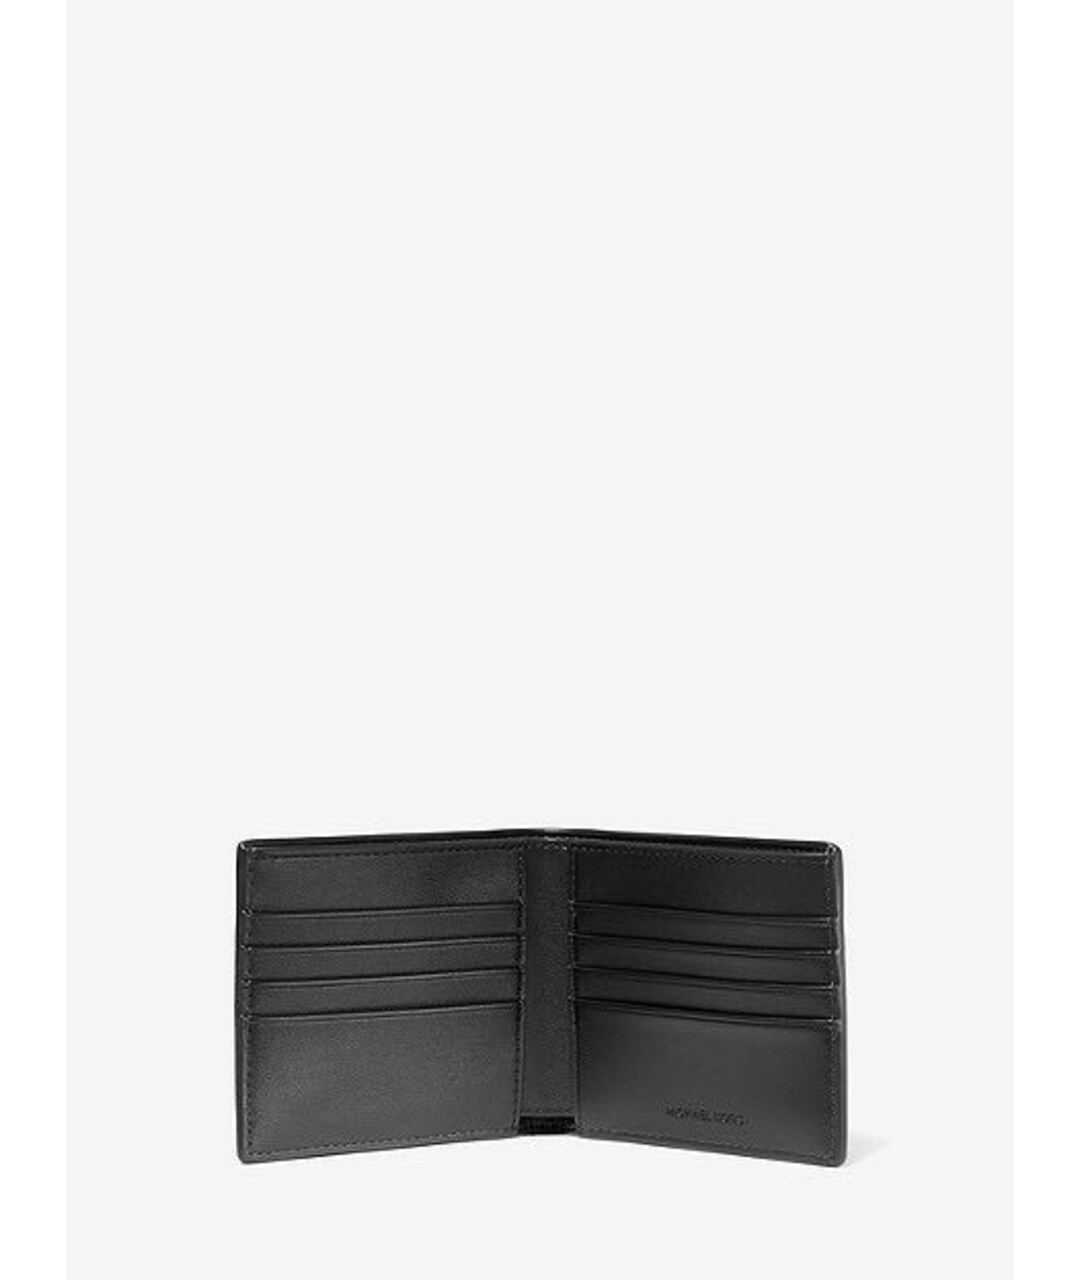 MICHAEL KORS Черный кожаный кошелек, фото 2